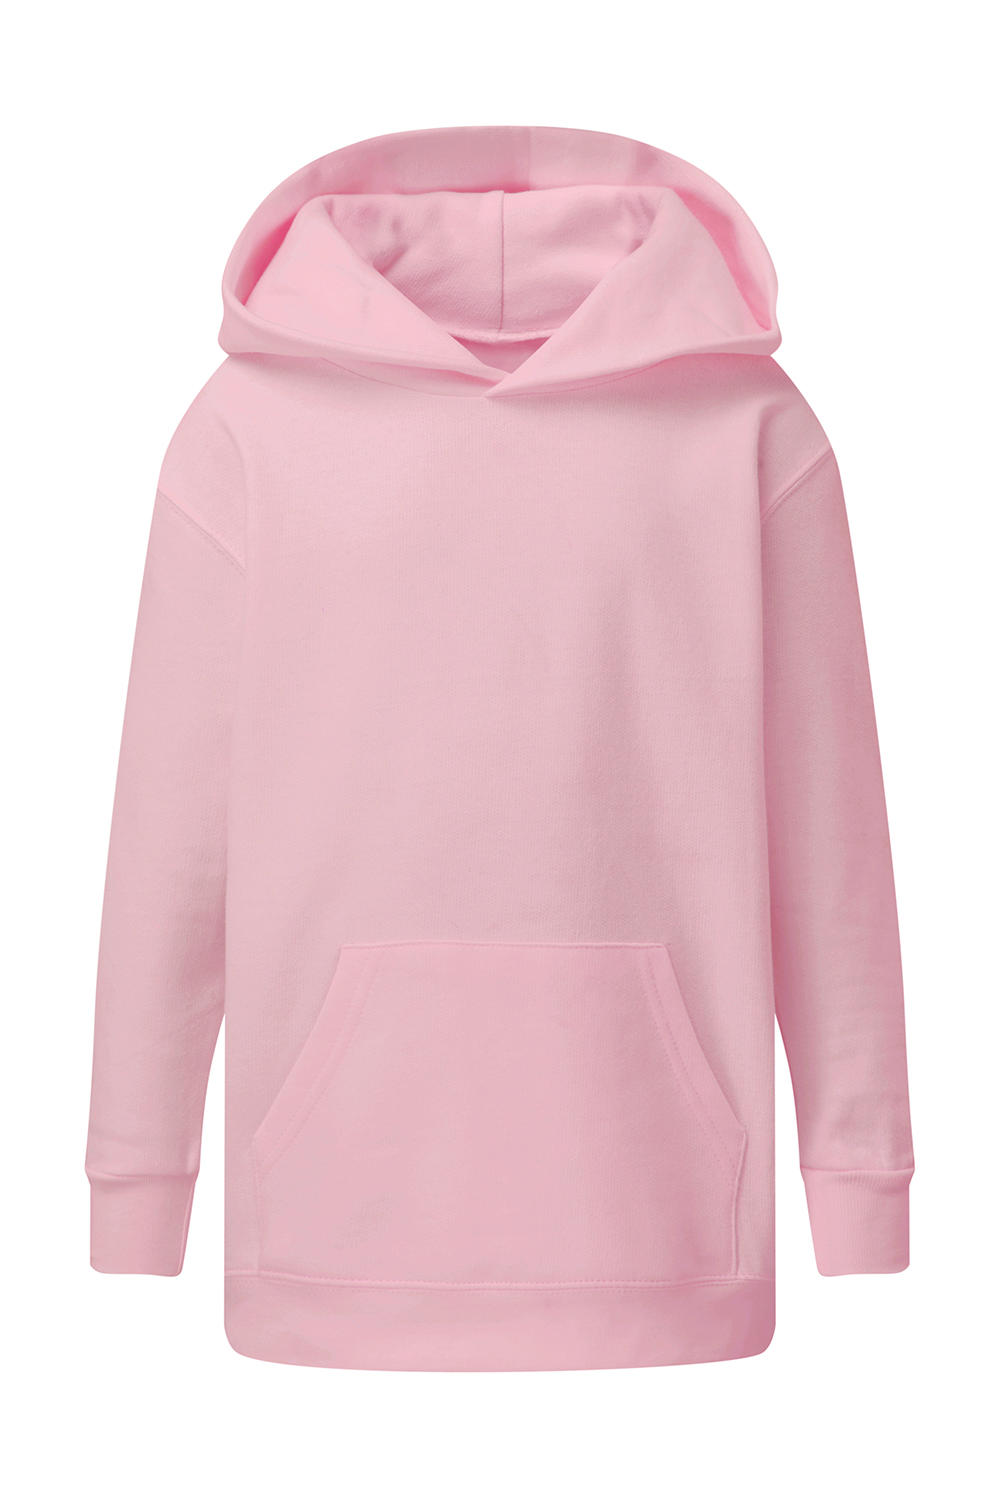  Kids Hooded Sweatshirt in Farbe Pink